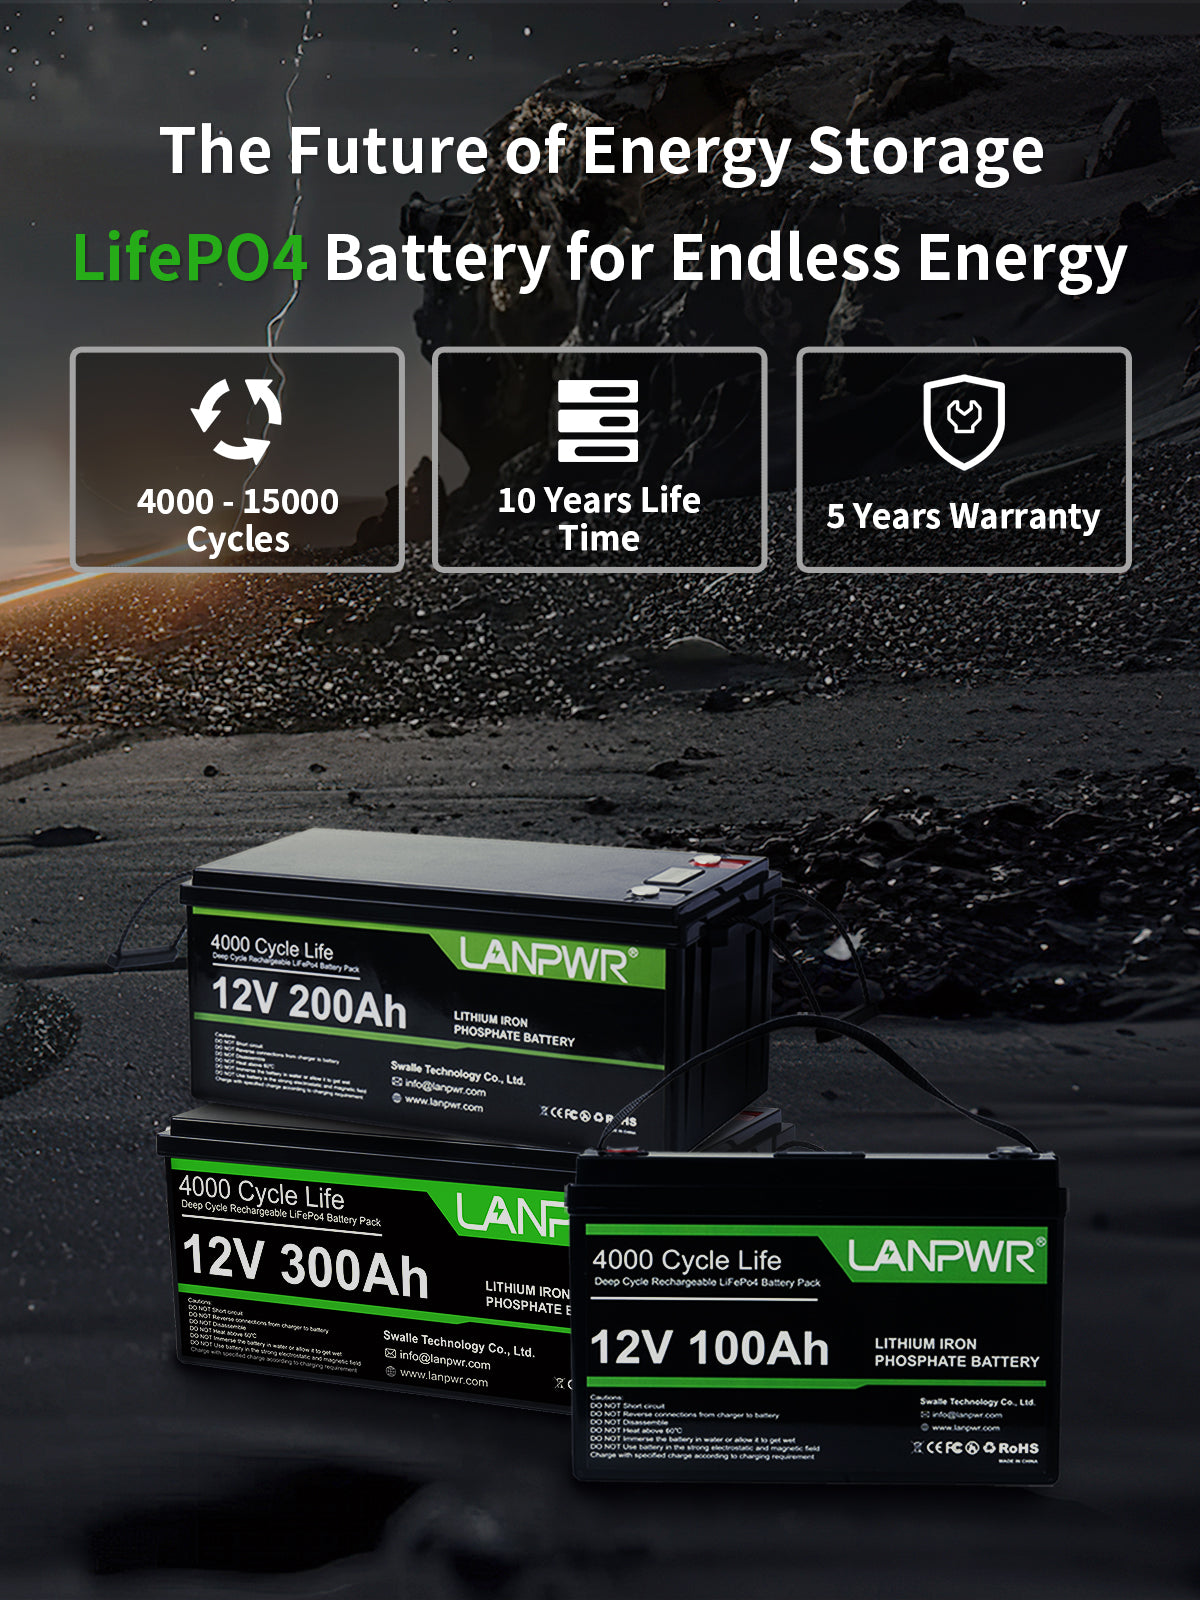 Portable Battery Backup Power Station for Emergency Preparedness